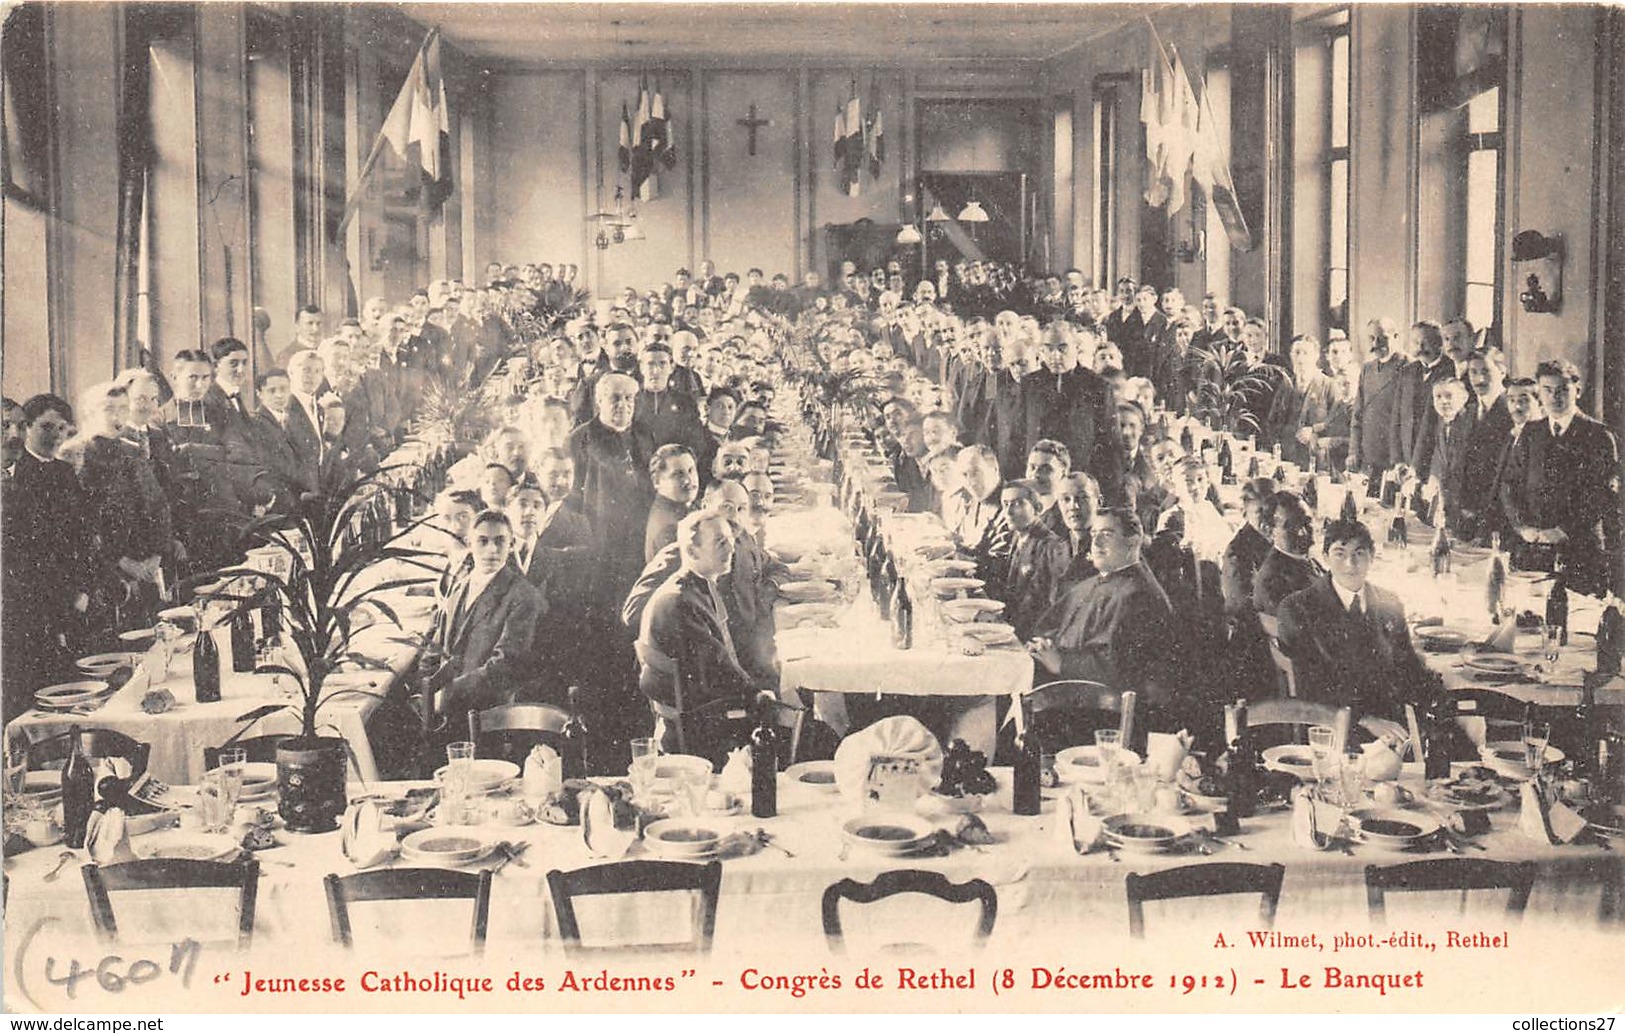 08-RETHEL- "JEUNESSE CATHOLIQUE DES ARDENNES" CONGRES DE RETHEL 8 DECEMBRE 1912, LE BANQUET - Rethel